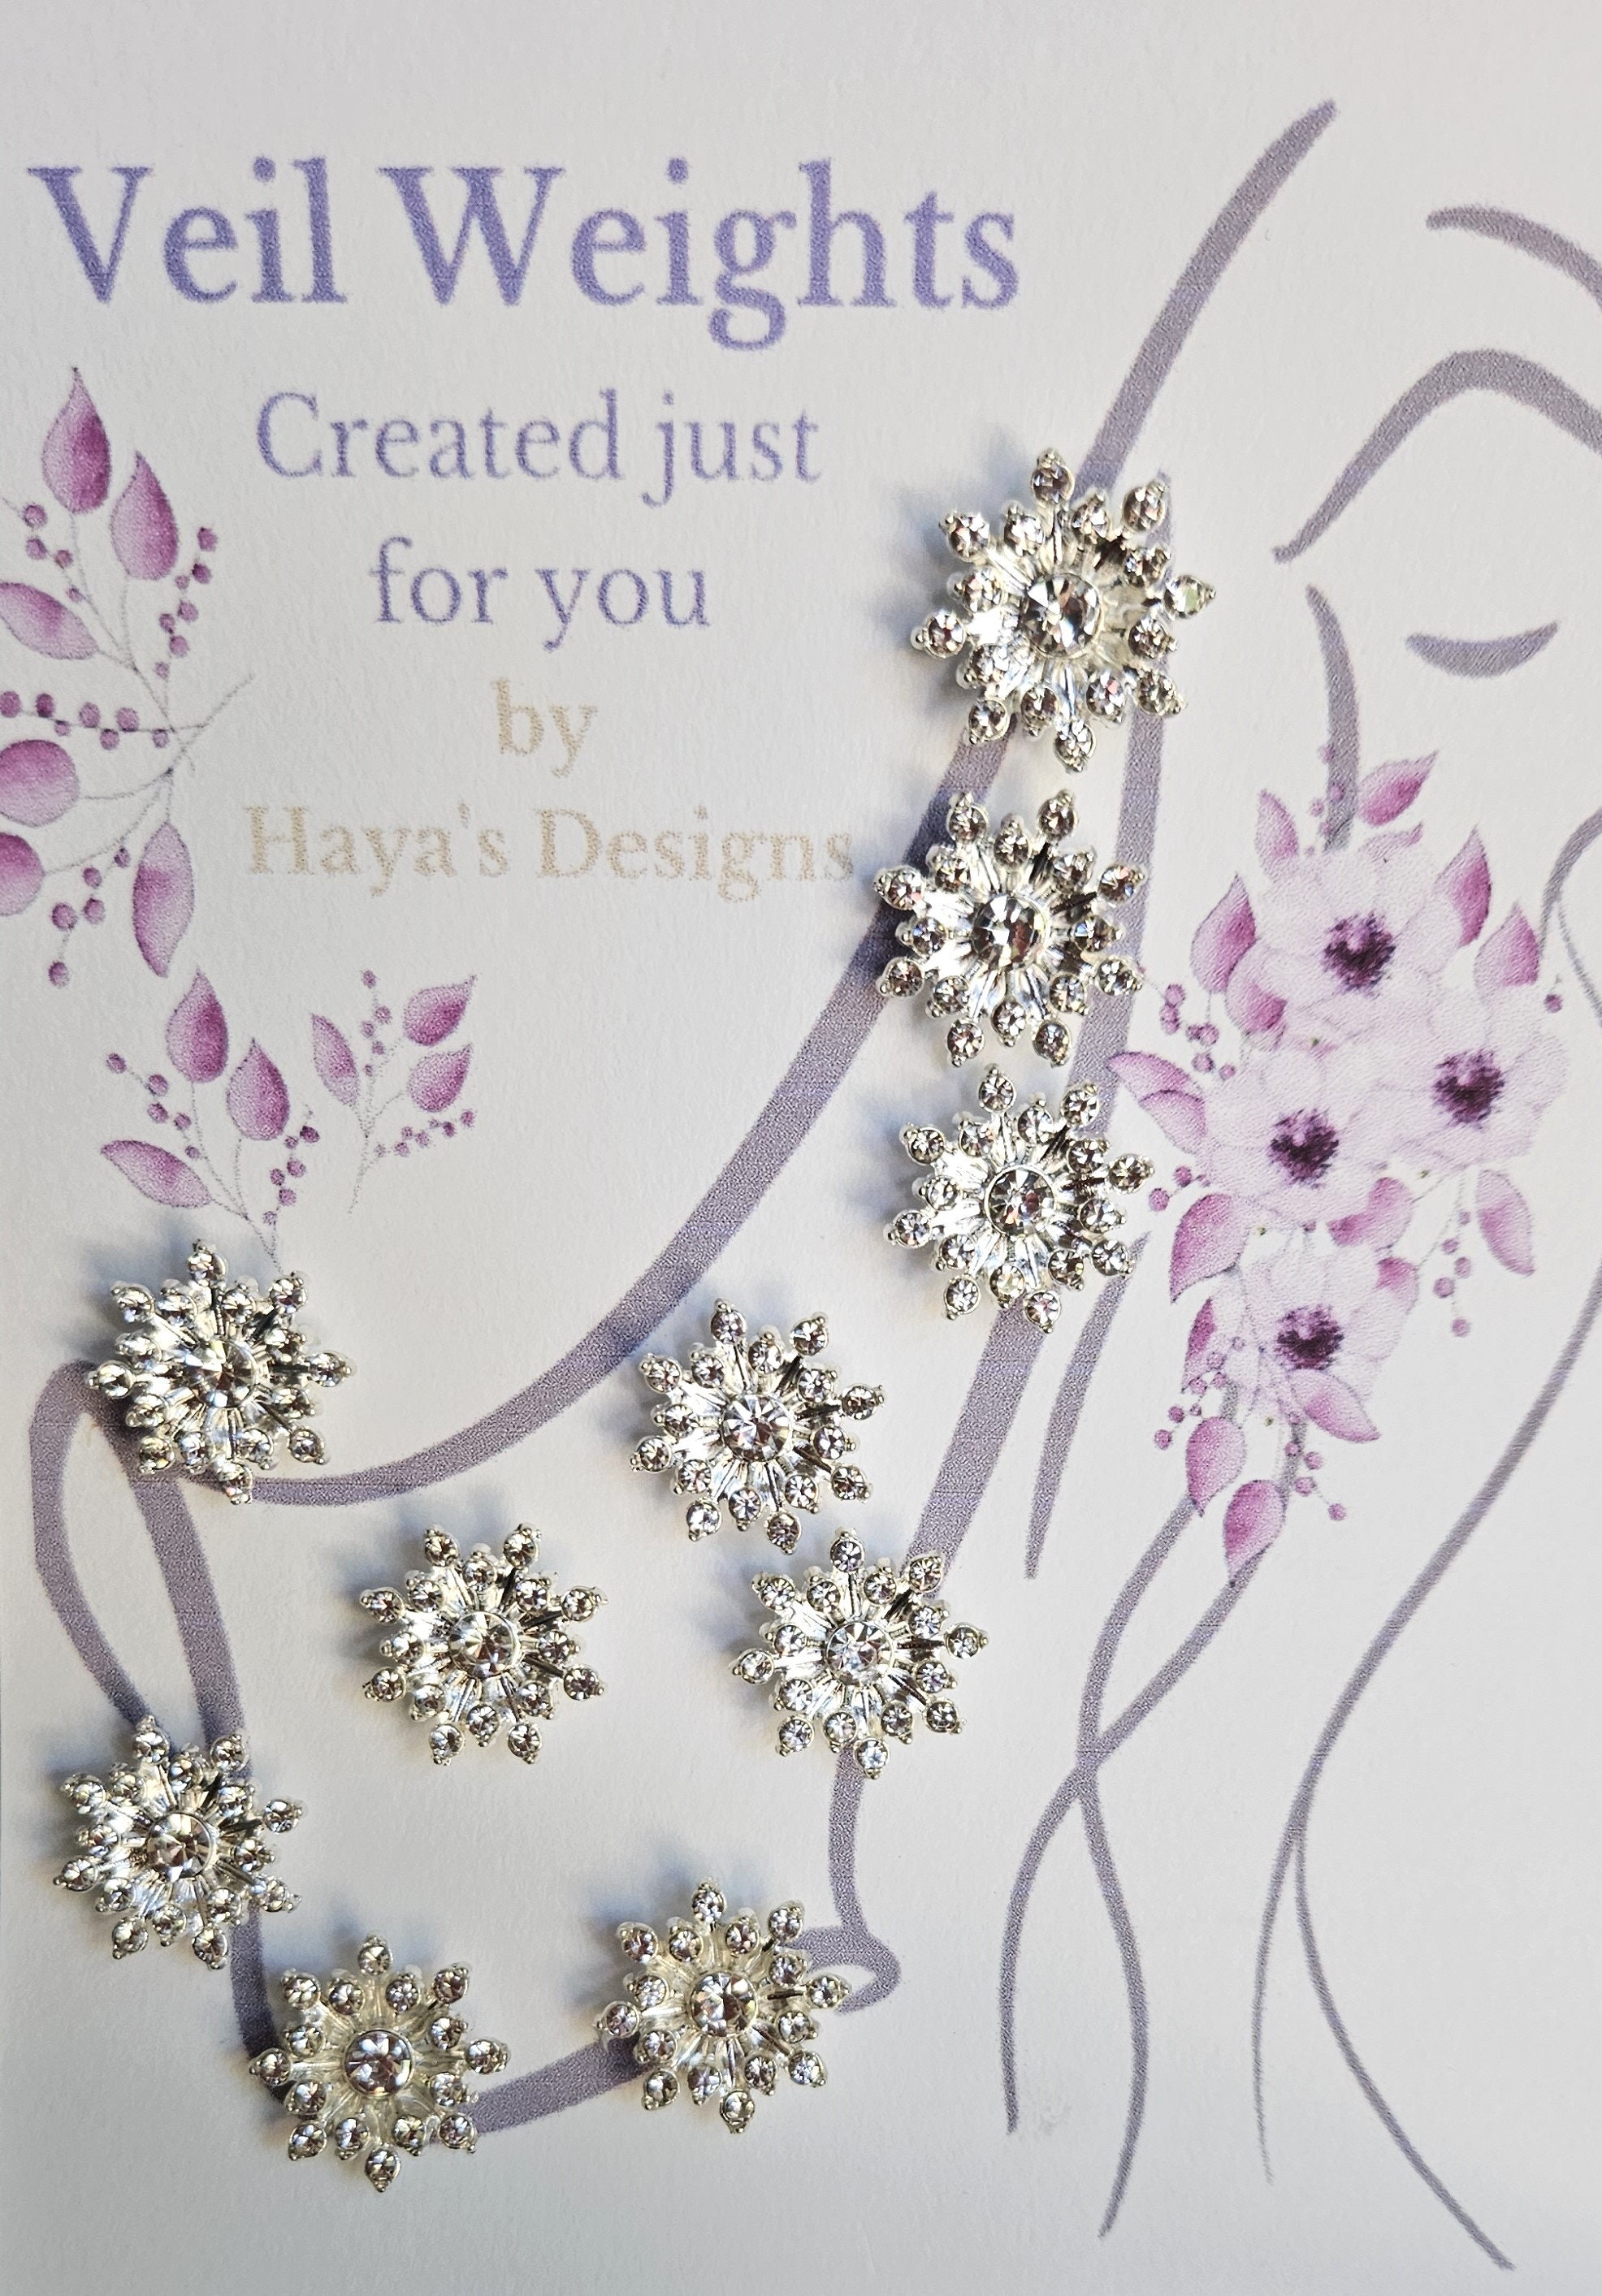 Haya's Designs Veil Weights, Accessories